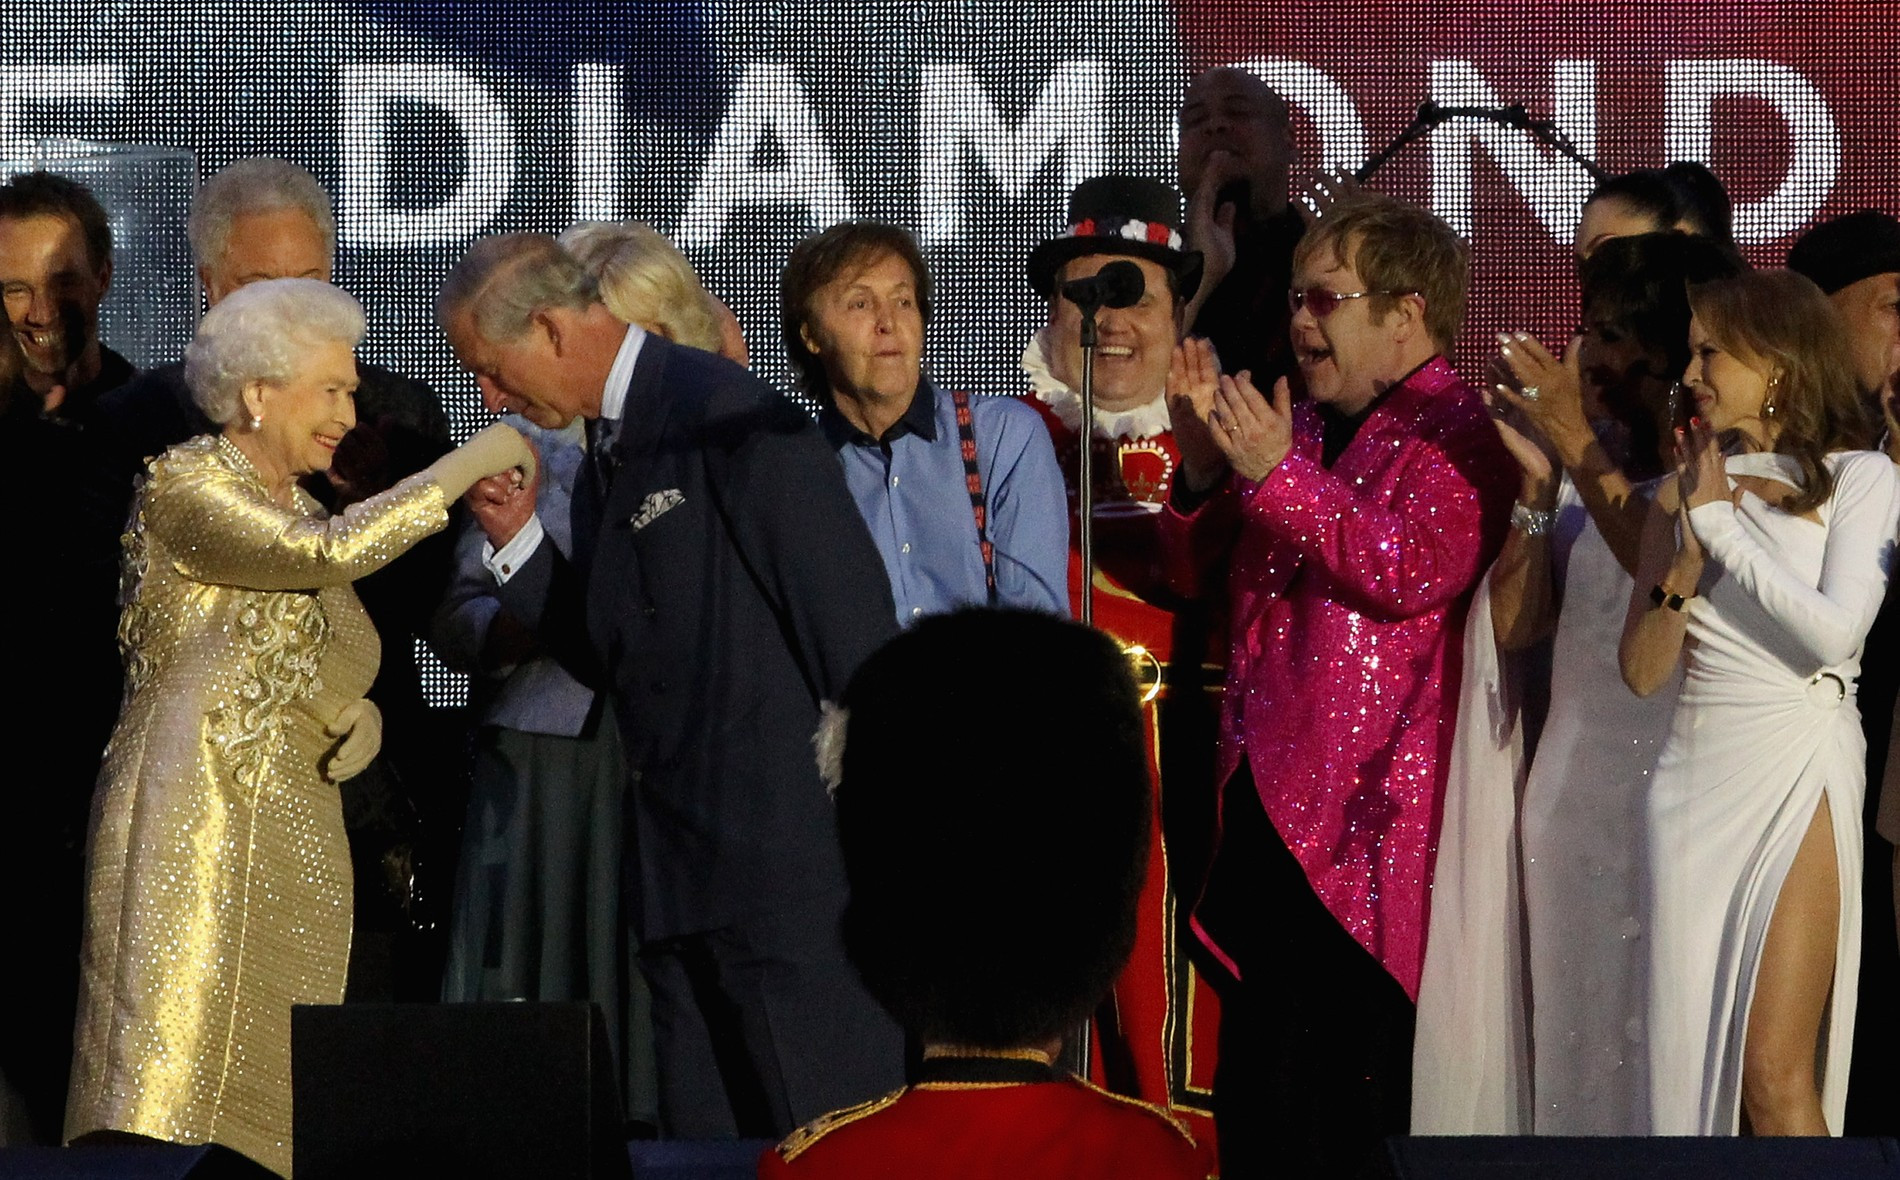 Концерт в честь 60-летия королевы на престоле, 2012 год